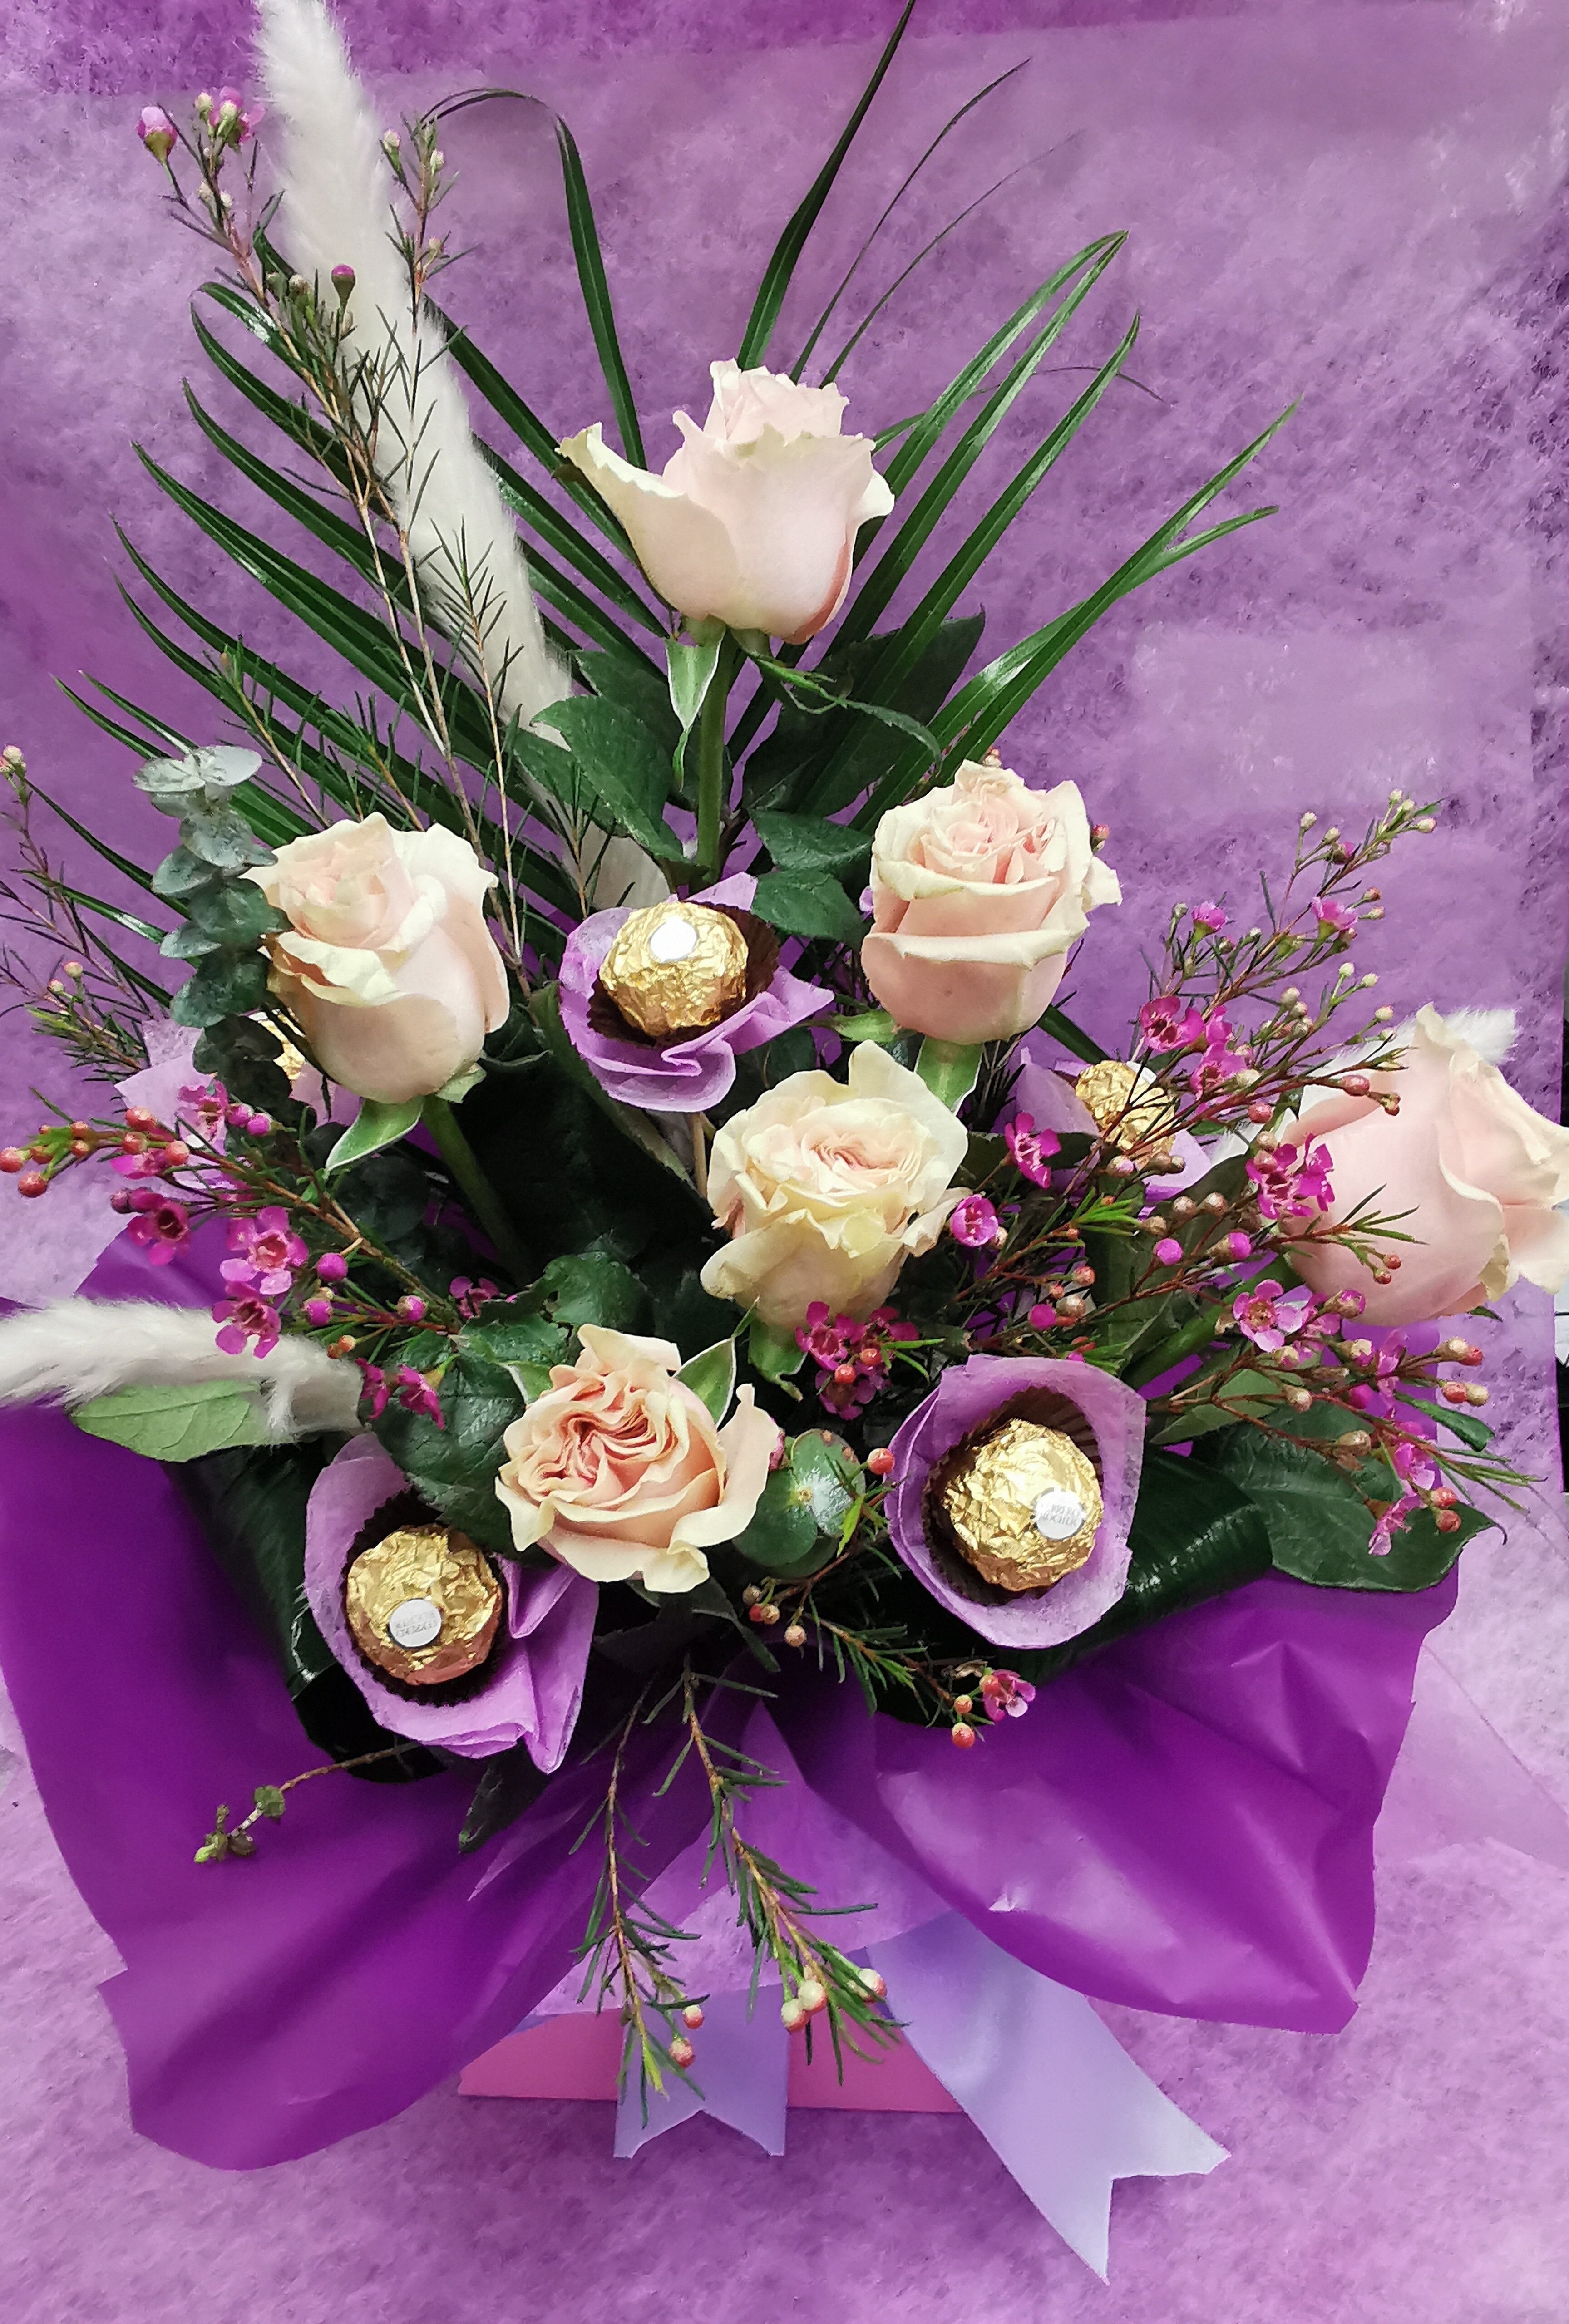 Mother's Day Rose and Ferrero Rocher Arrangement Flower Arrangement